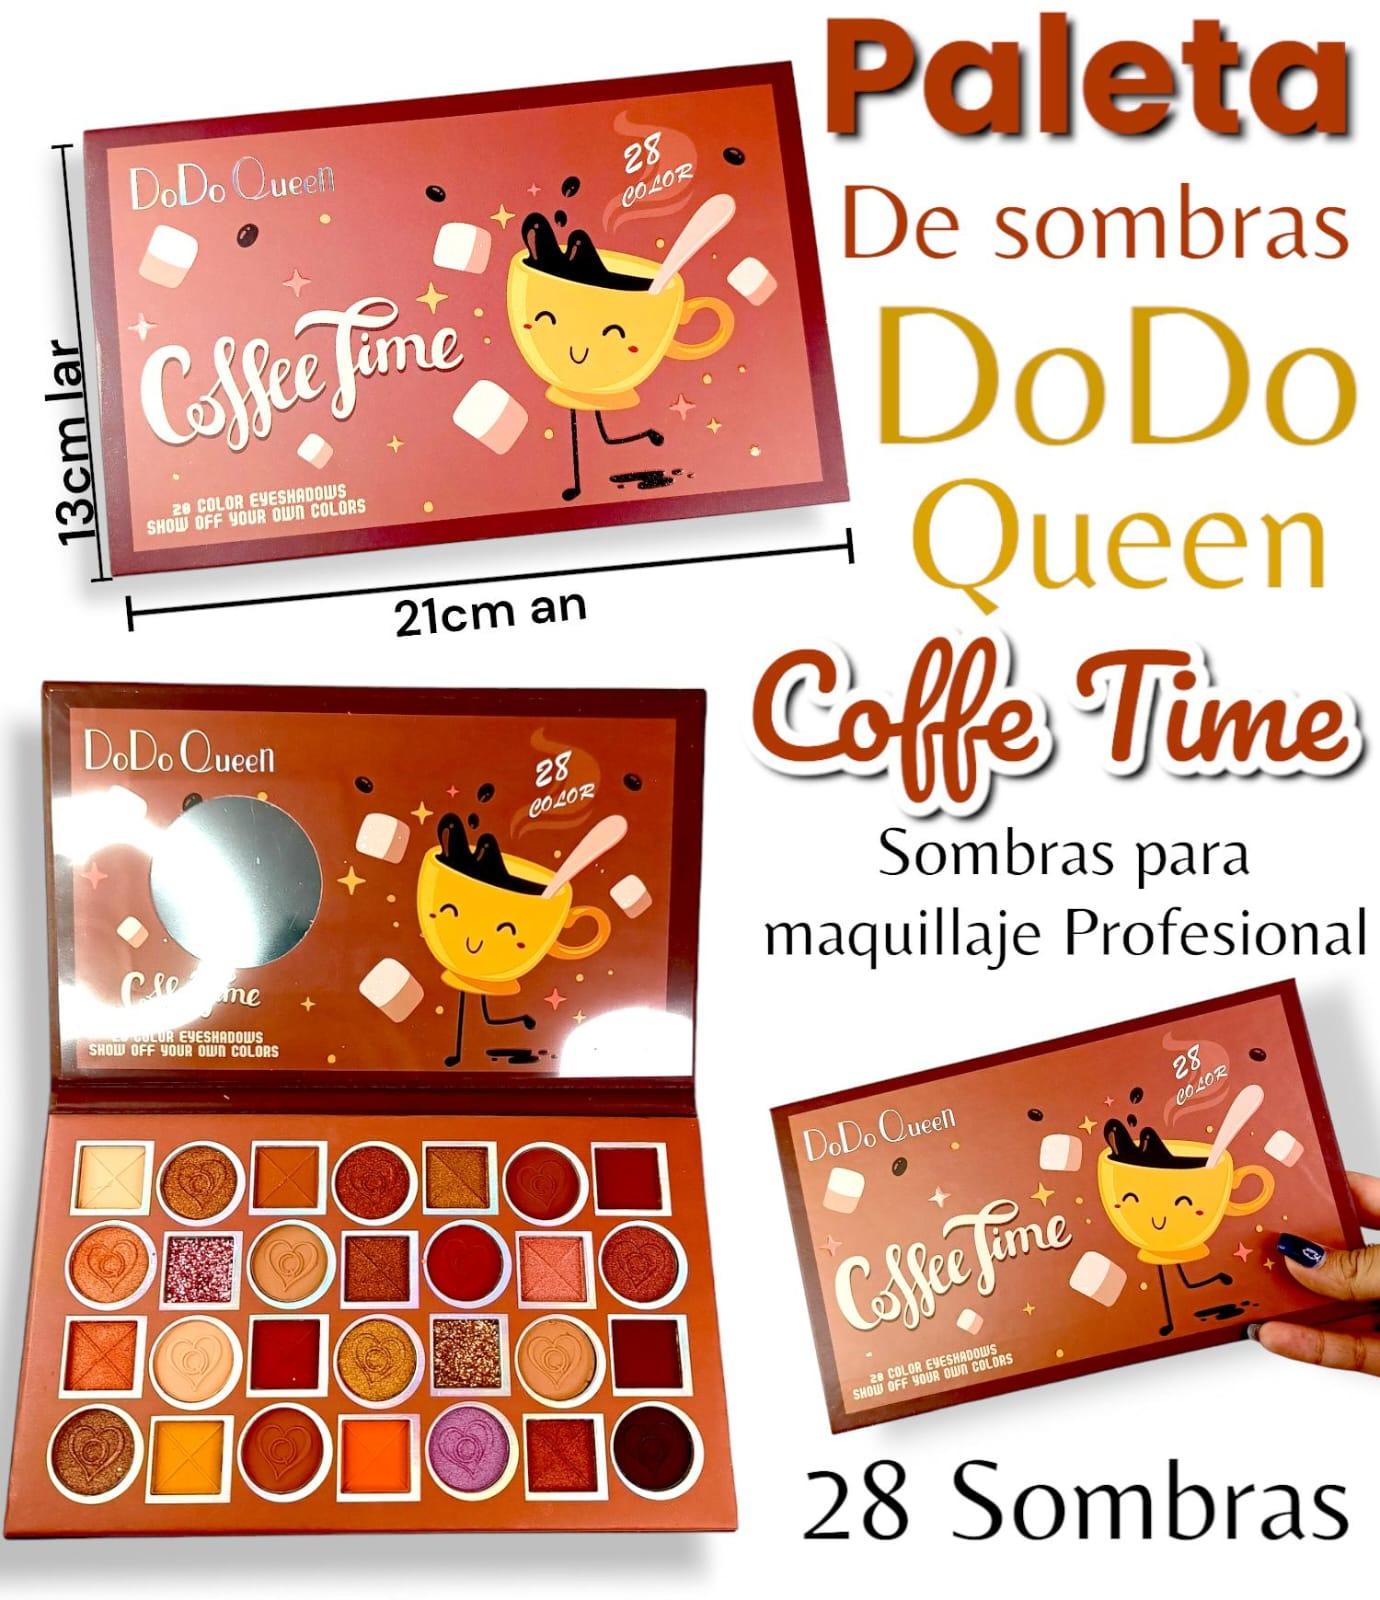 Paleta de Sombras Dodo Queen Coffe Time 12cm